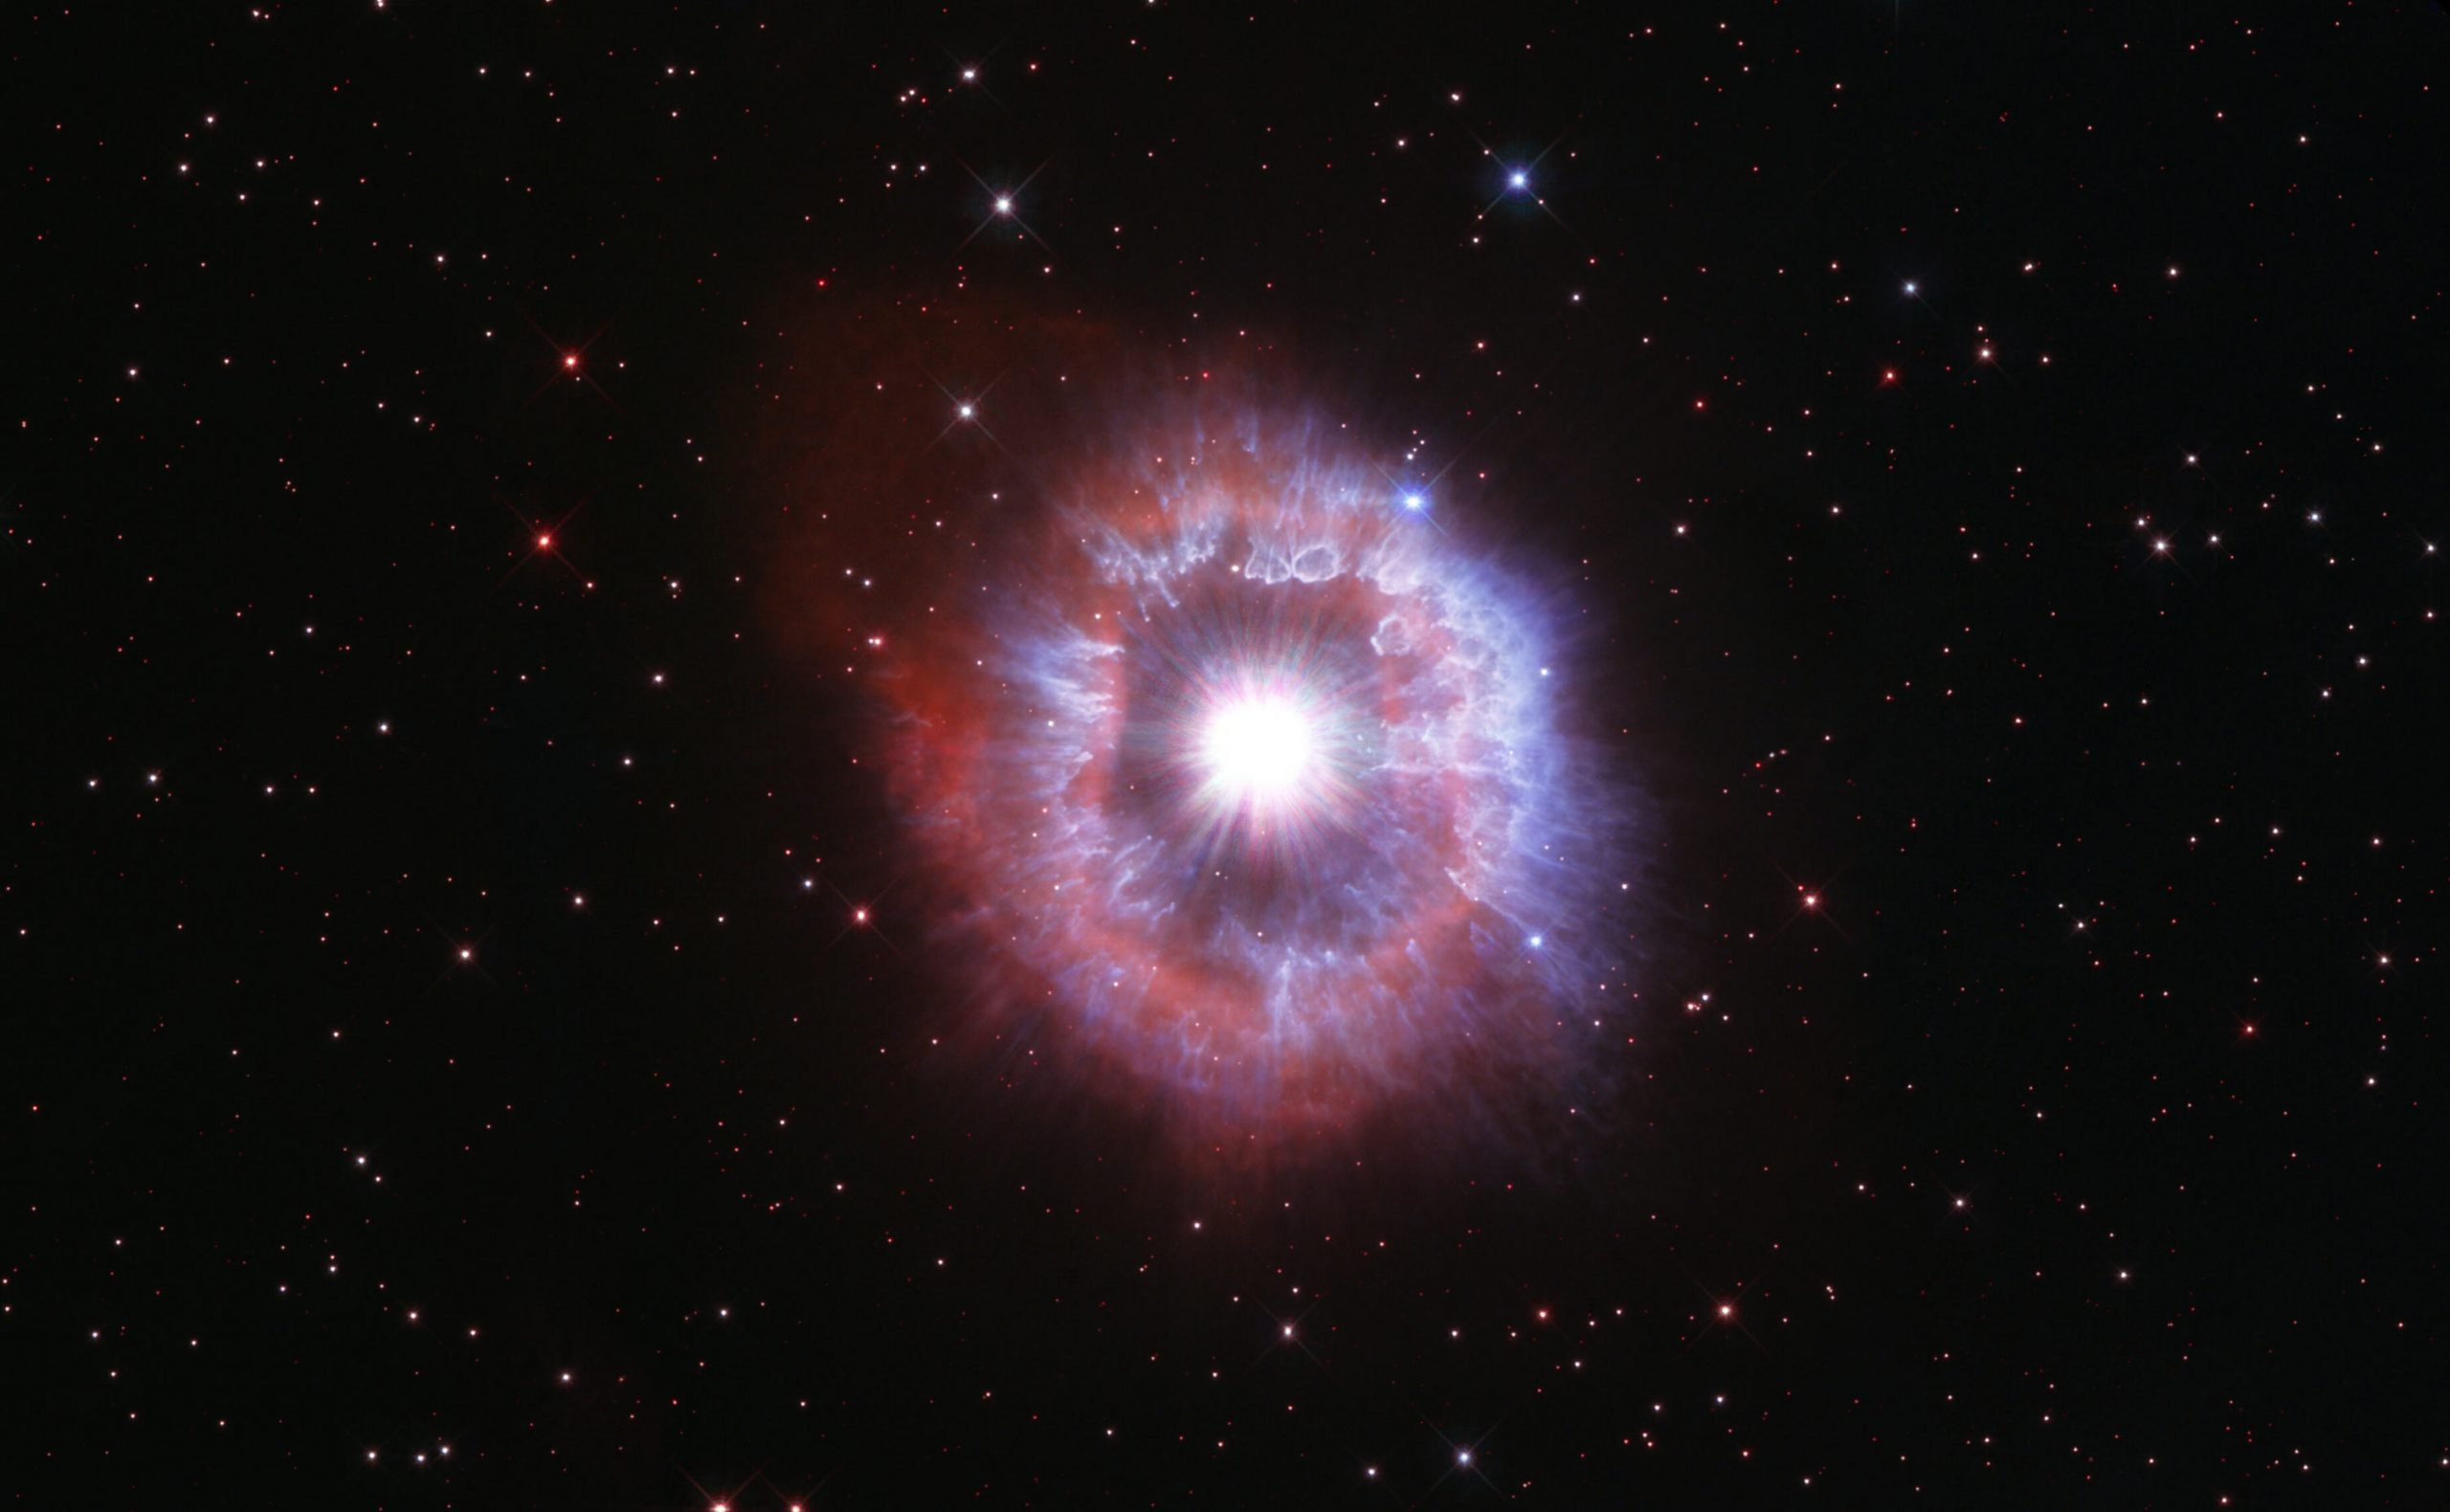 Хаббл отпраздновал свой 31-й день рождения, представив невероятное изображение AG Carinae